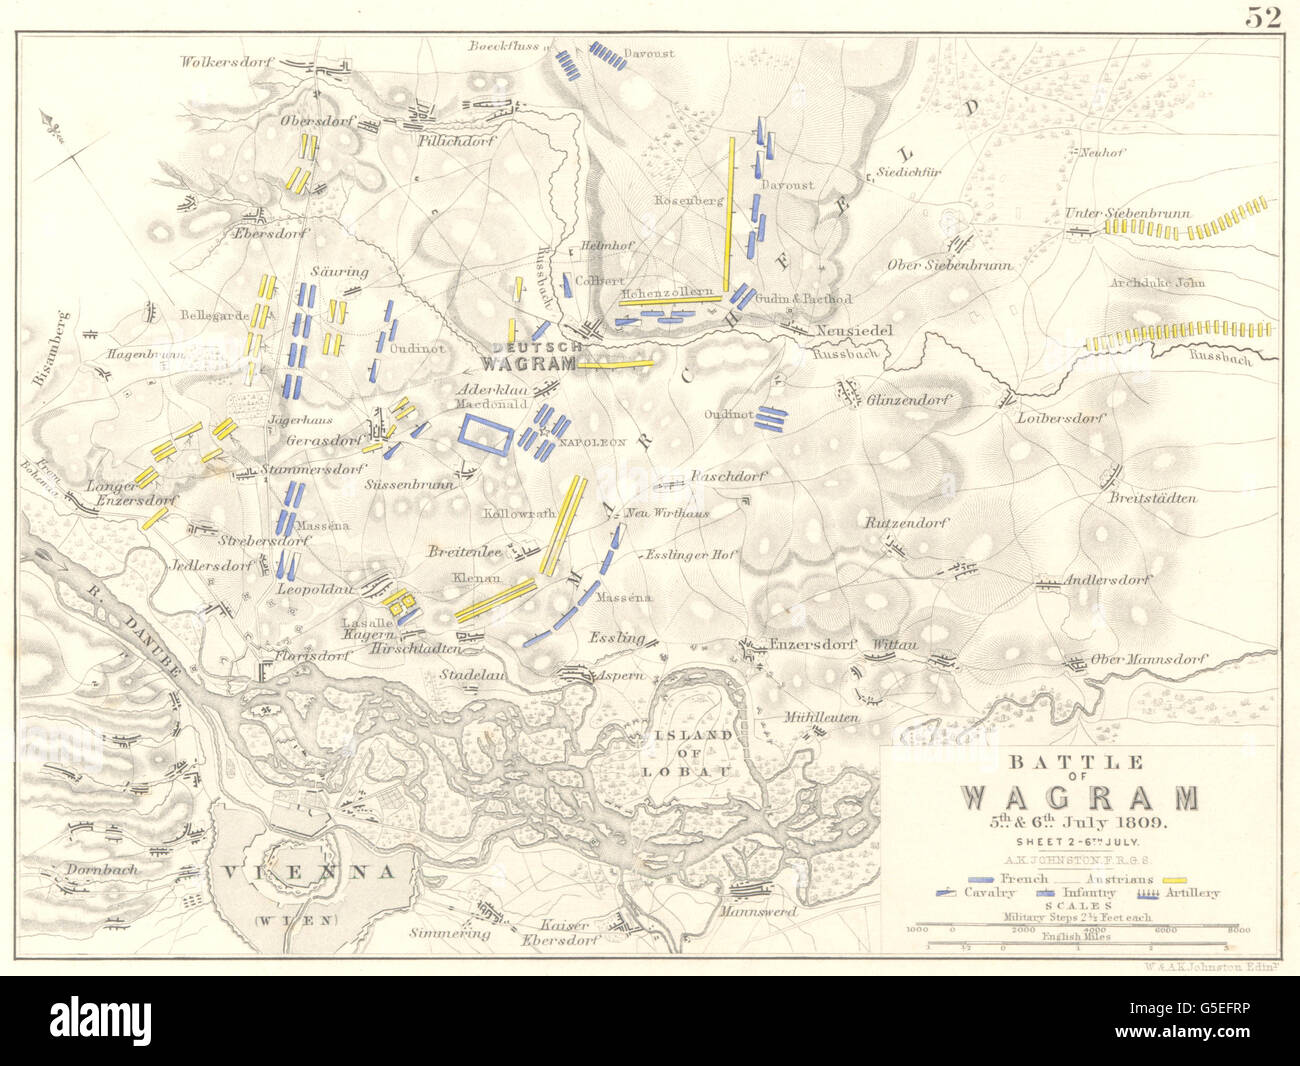 Schlacht von WAGRAM: 5. & 6. Juli 1809 - Blatt 2. Österreich, 1848 Antike Landkarte Stockfoto